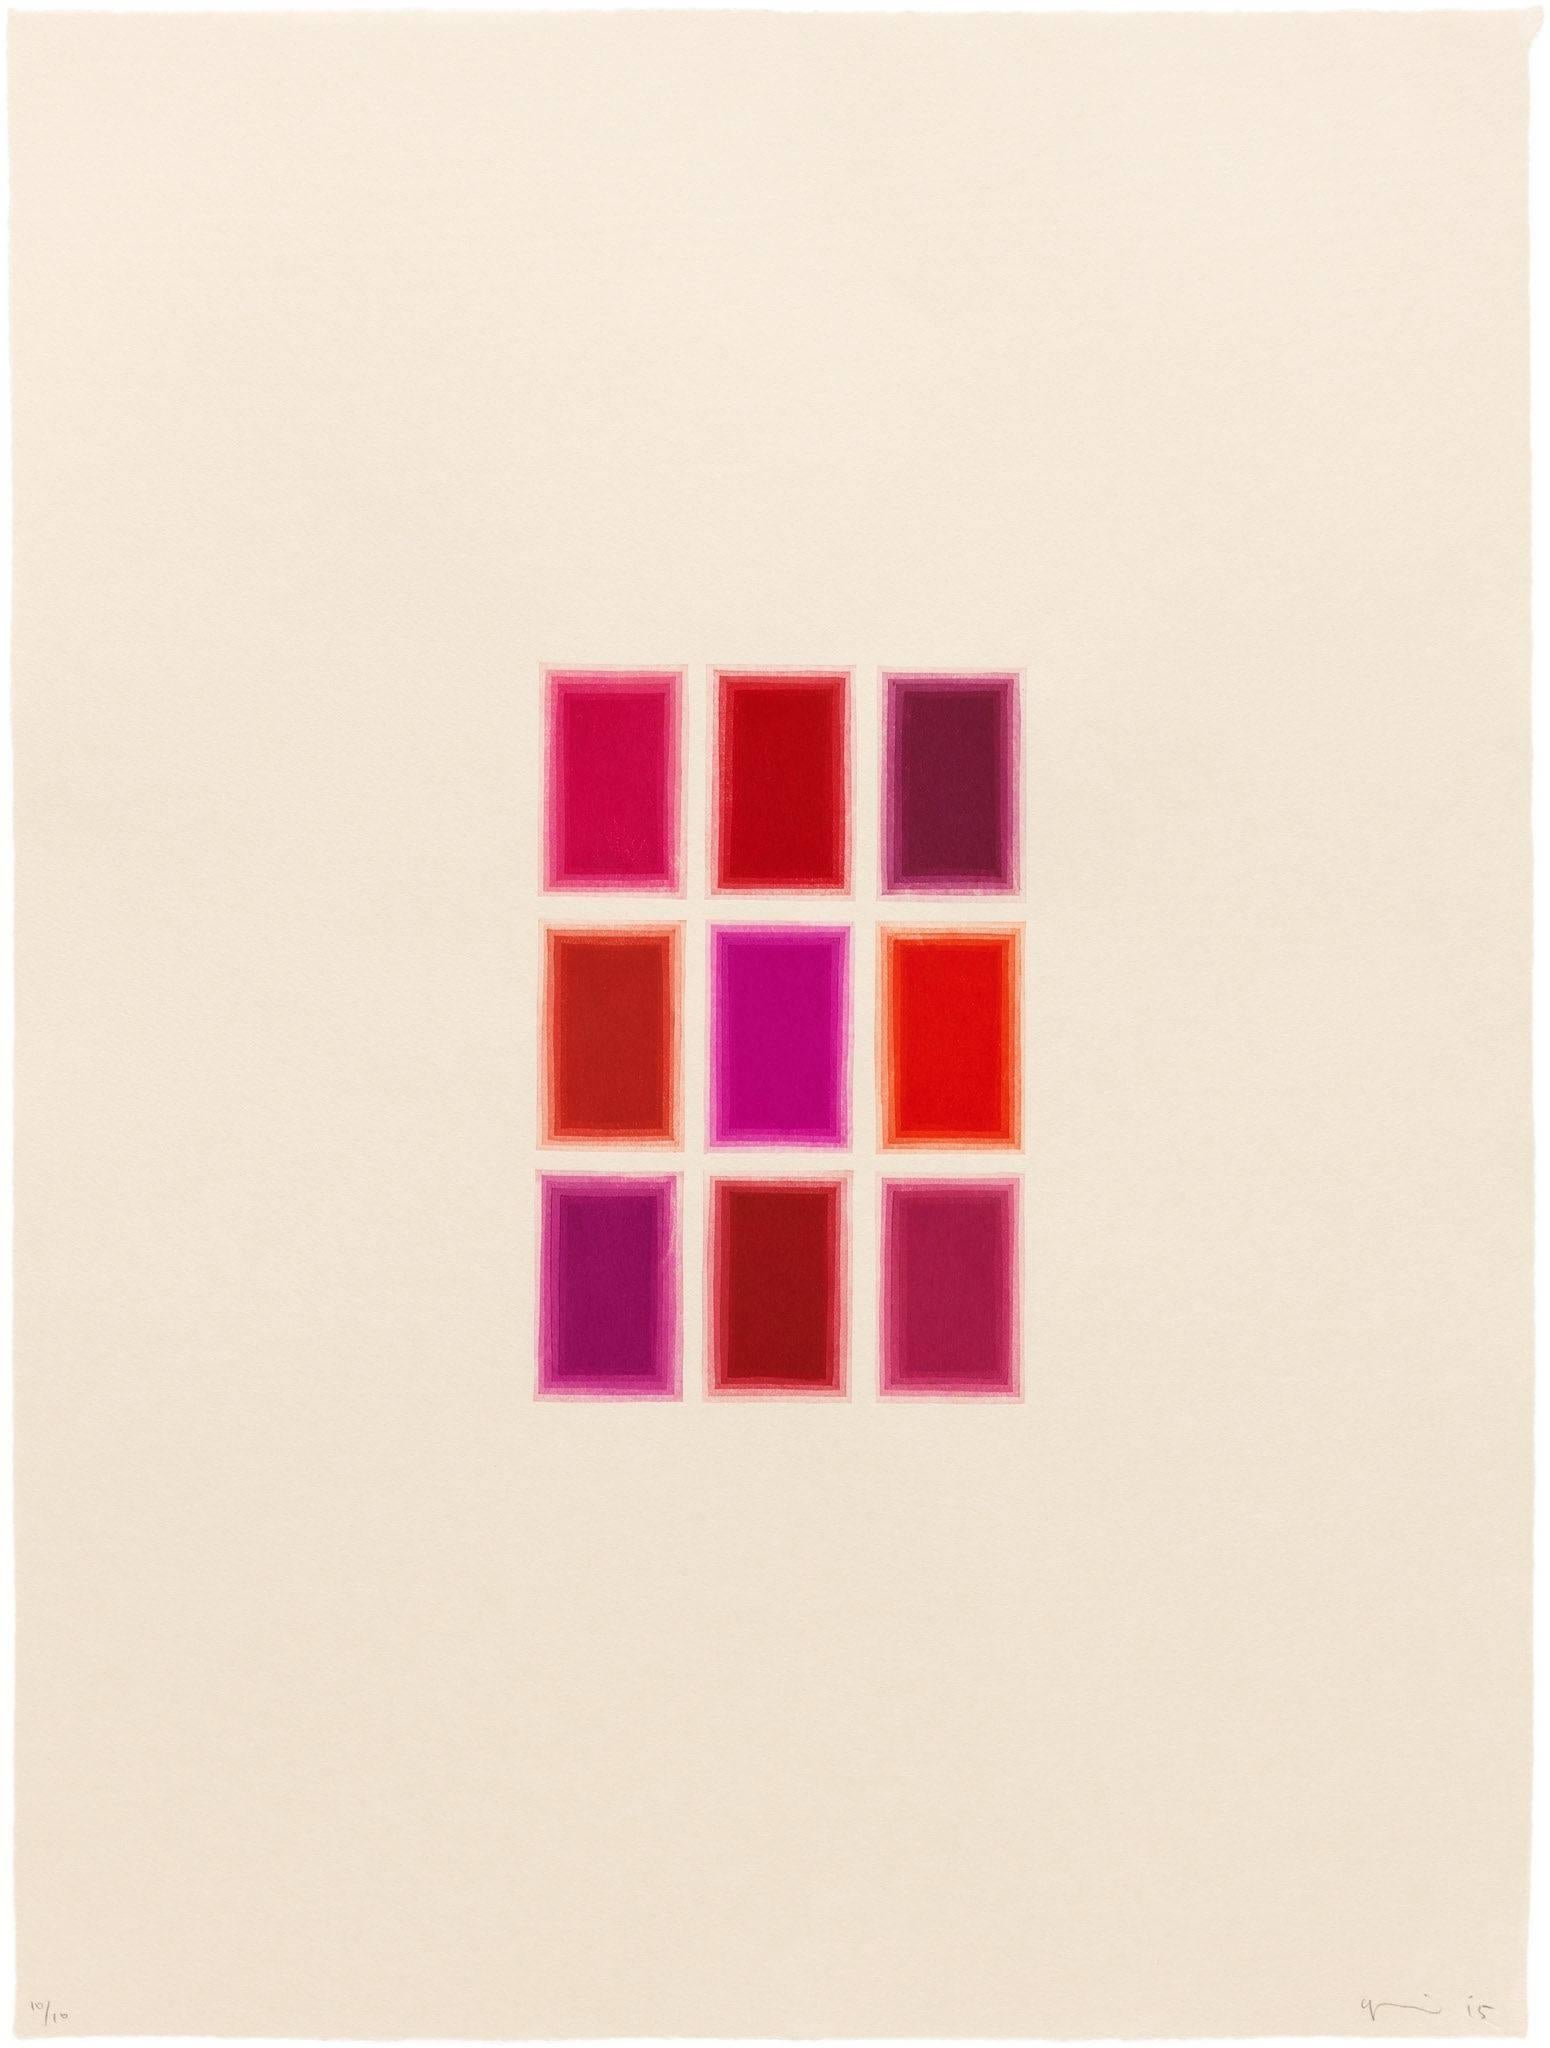 Yasu Shibata Abstract Print - 9 Red Rectangles